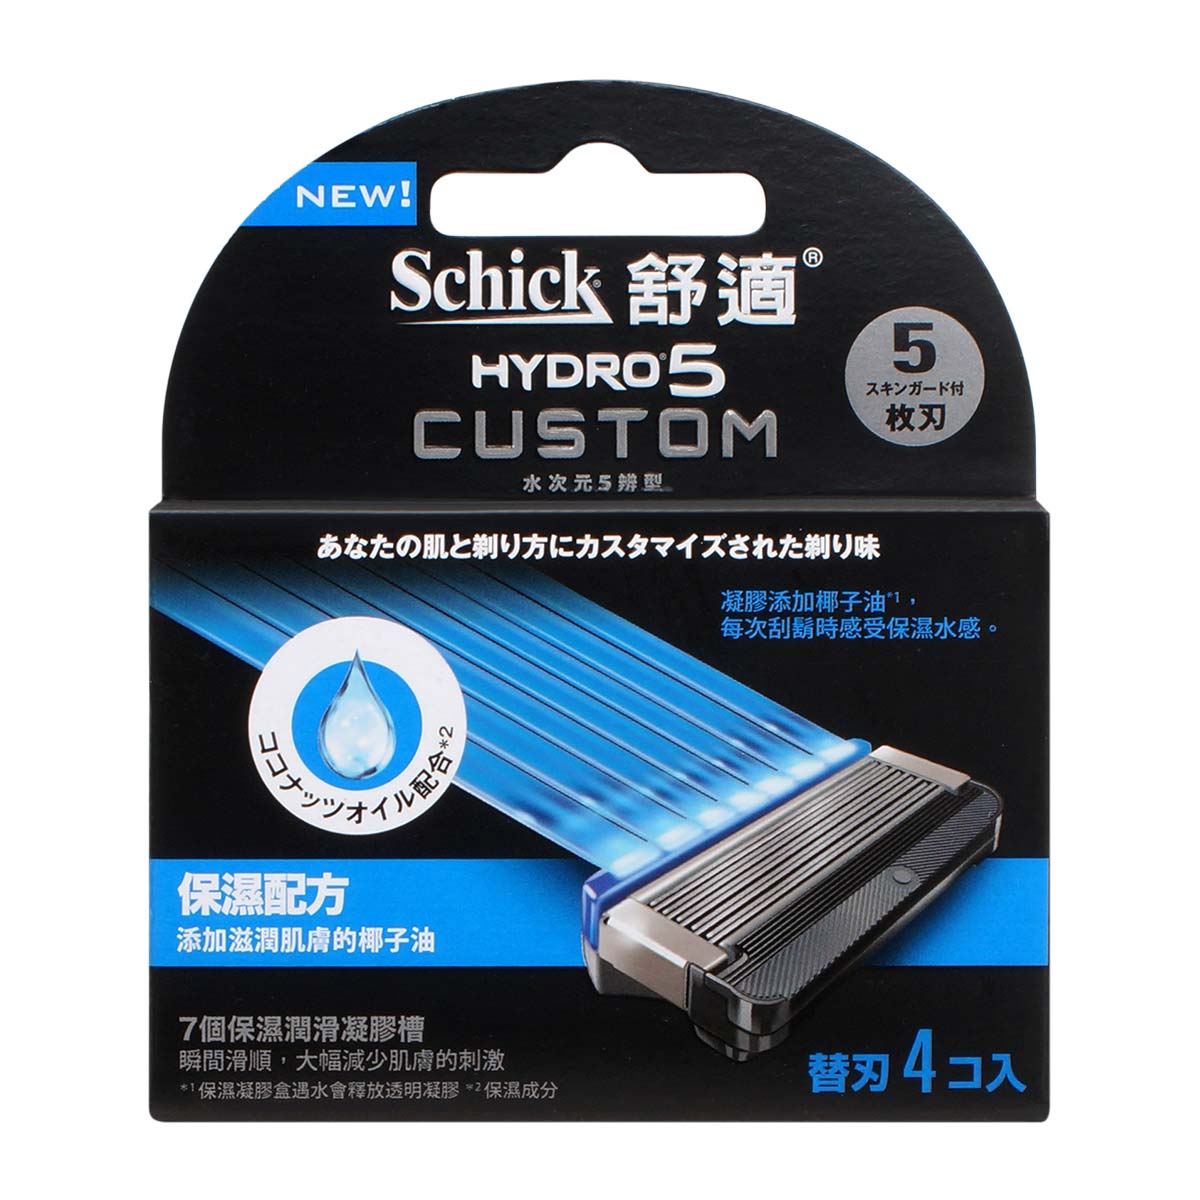 Schick 舒适 Hydro5 Custom 5 辨型补充装刀片 4 片 - 保湿-p_2